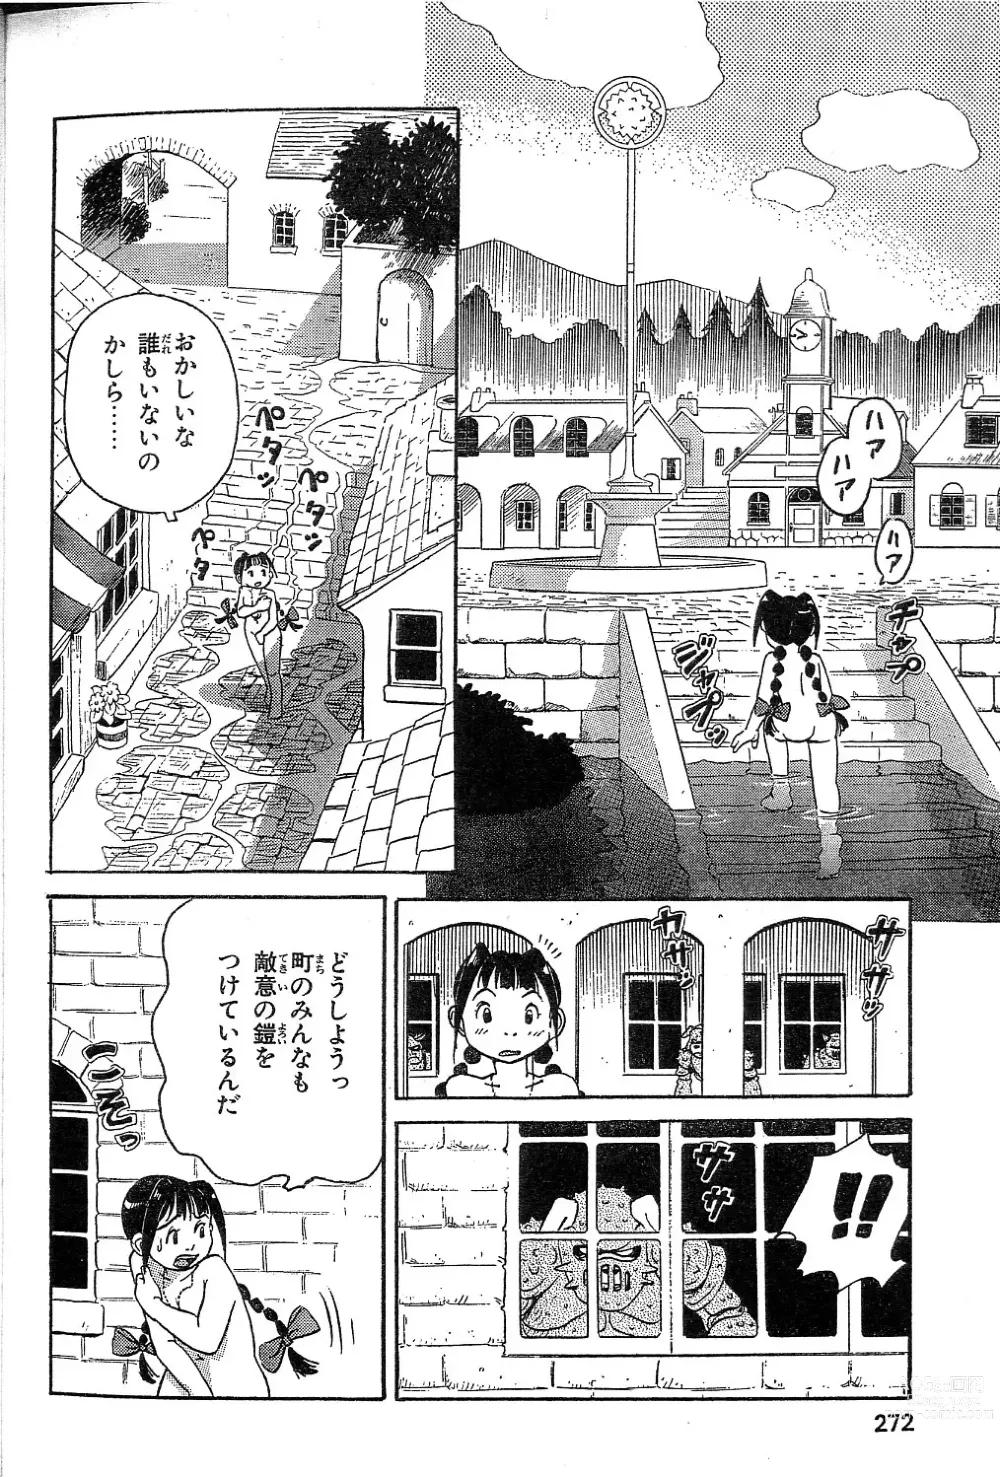 Page 2 of manga Yamaneko-sensei no Monogatari